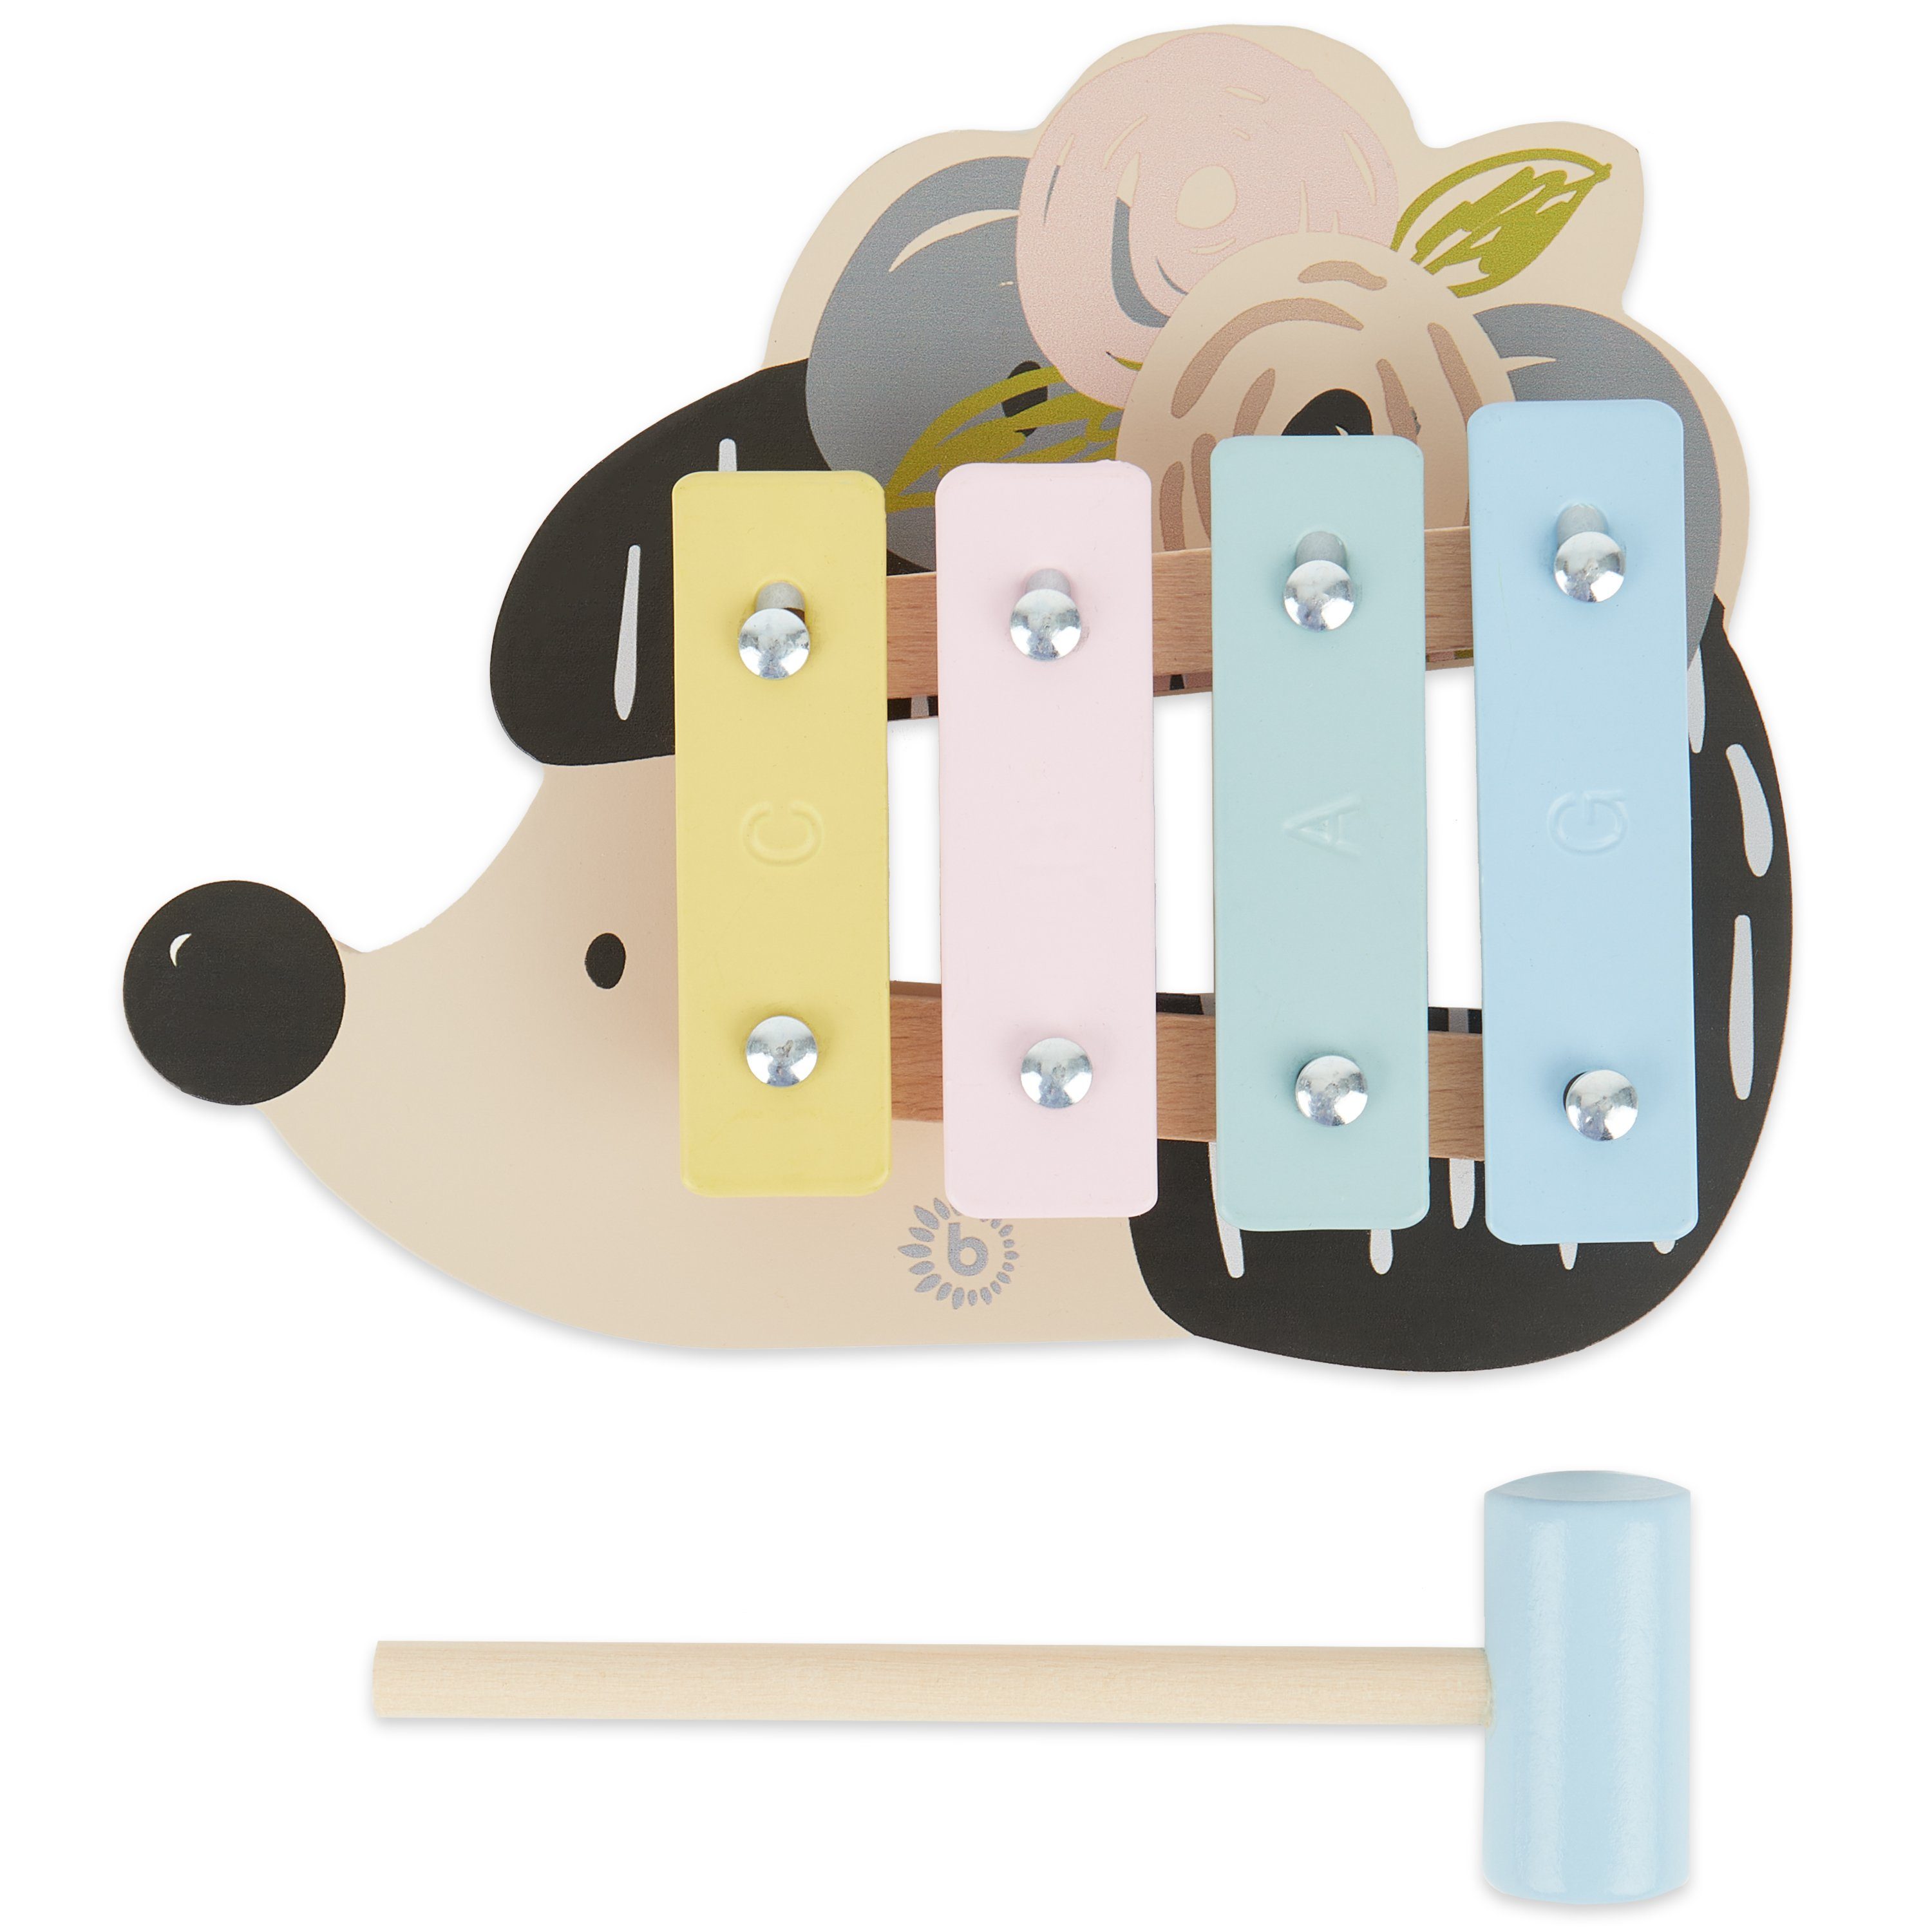 BIECO Spielzeug-Musikinstrument Bieco Kinder Xylophon in Igel-Design  Musikinstrumente für Kinder ab 1 Jahr Süßes Musikspielzeug Baby  Glockenspiel für Kinder mit Schlägel Xylophon Kinder 1 Jahr Baby  Musikinstrumente